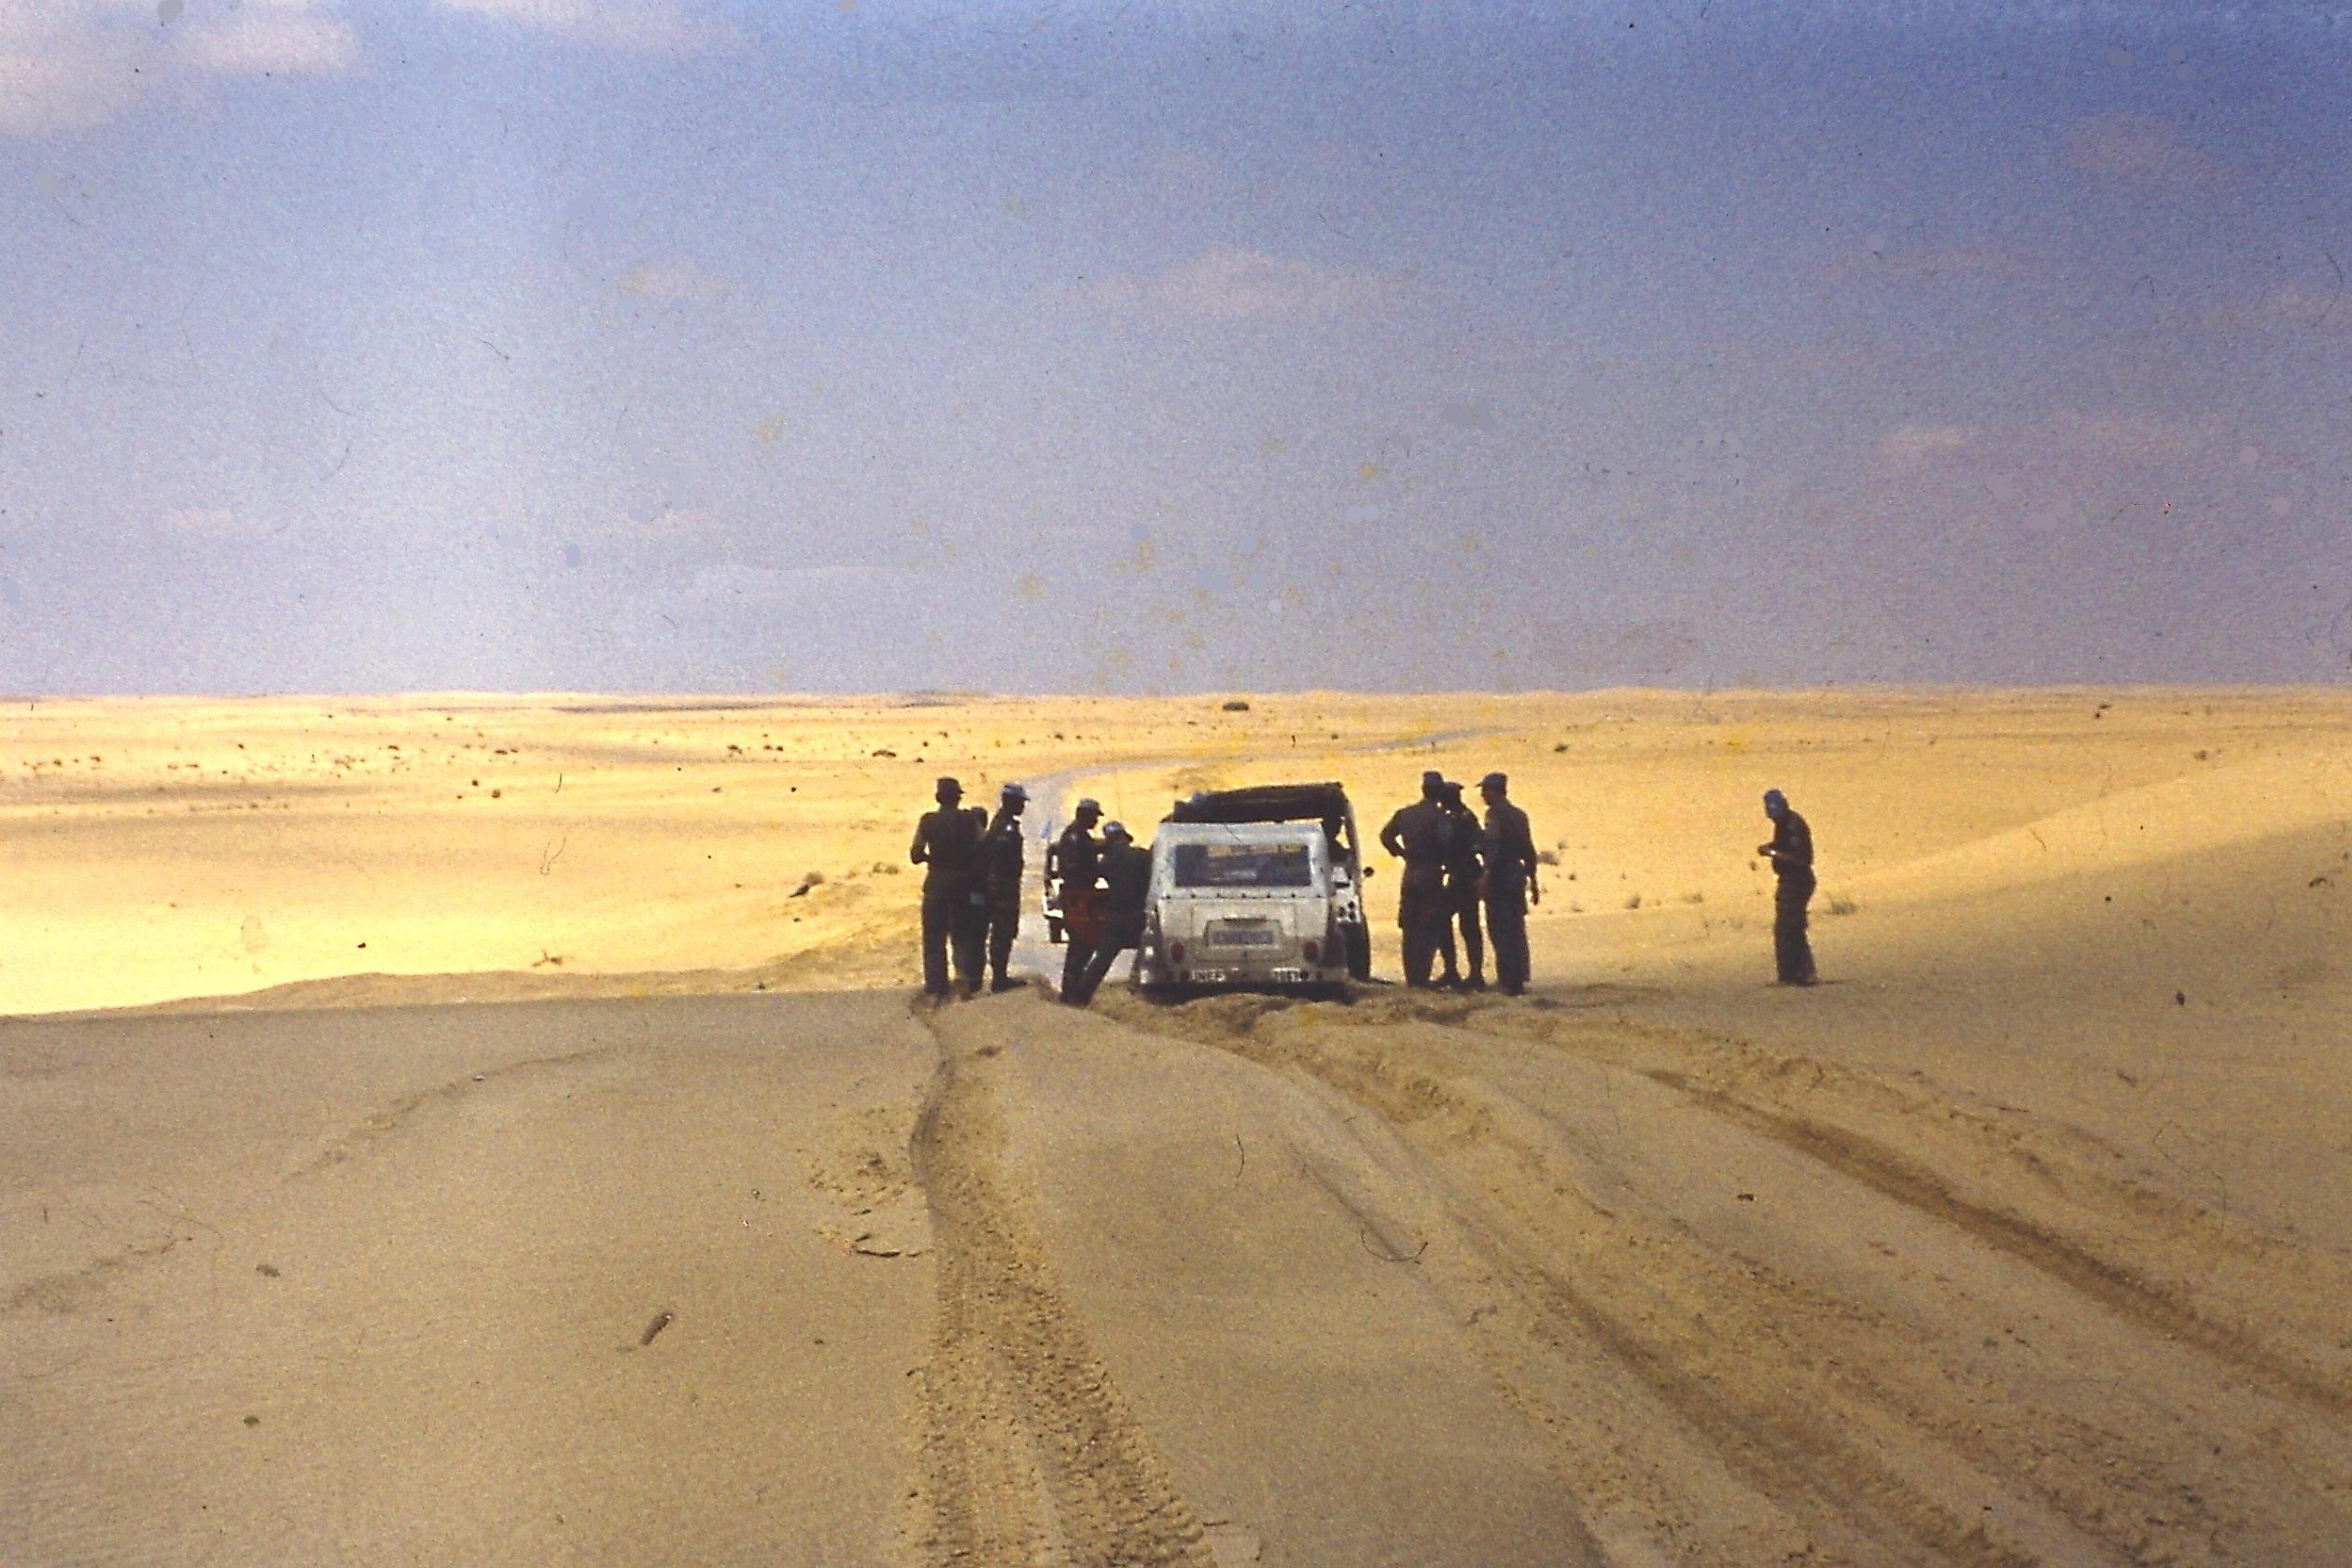 Wüste Sinai